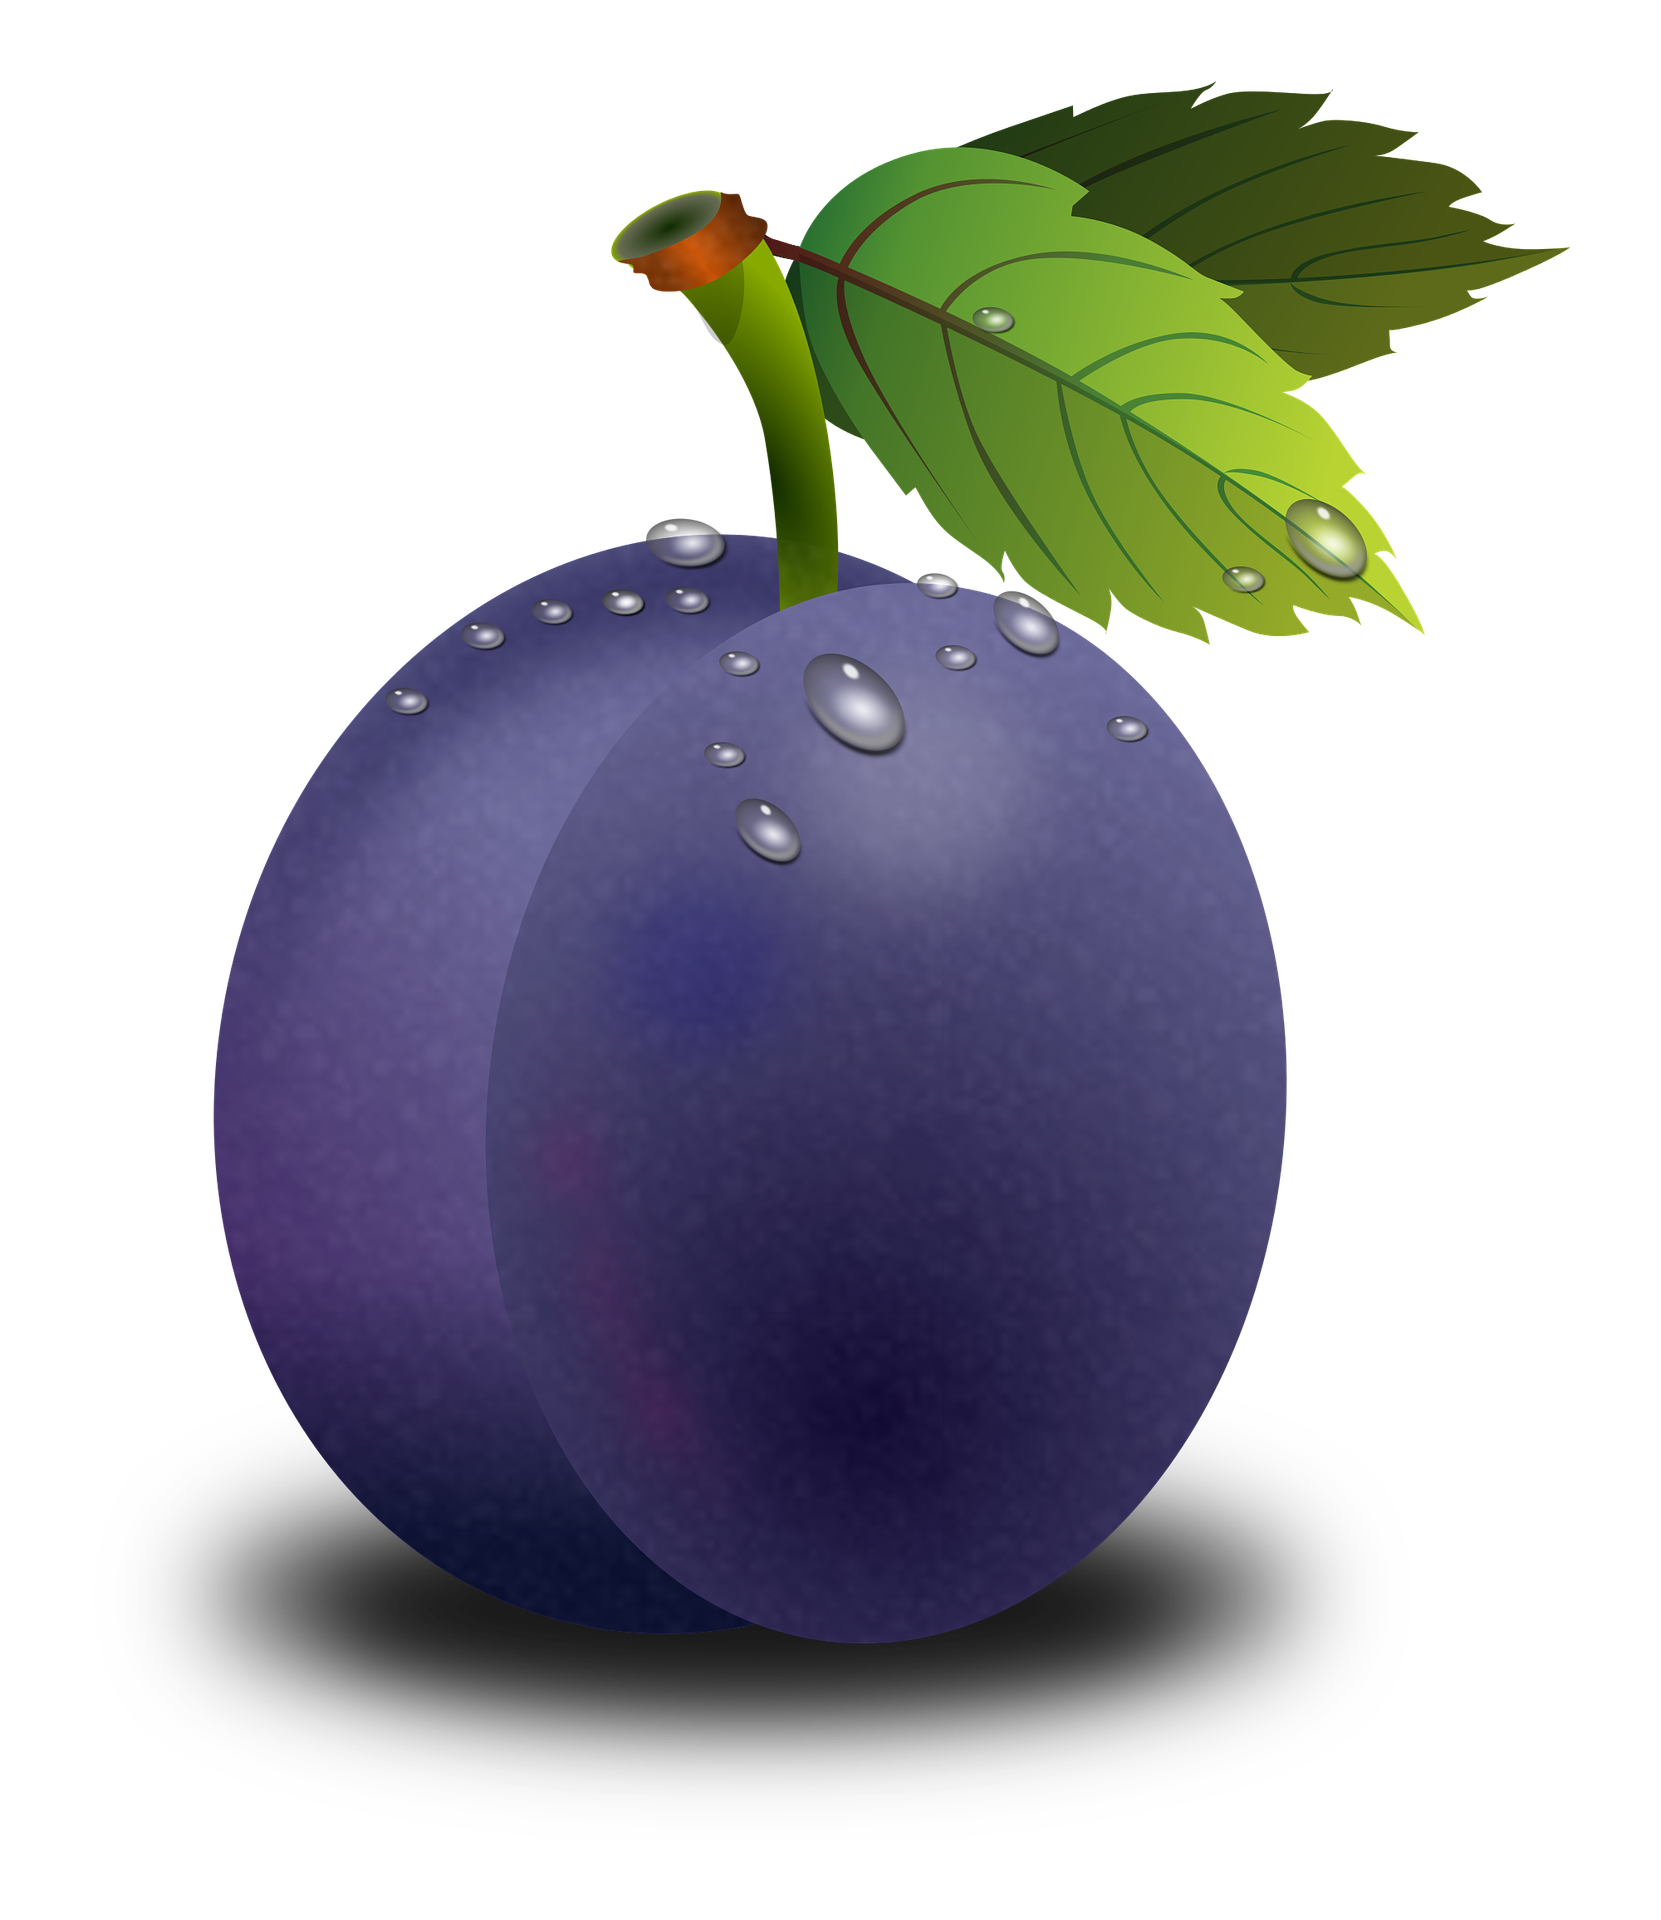 plum clipart purple food